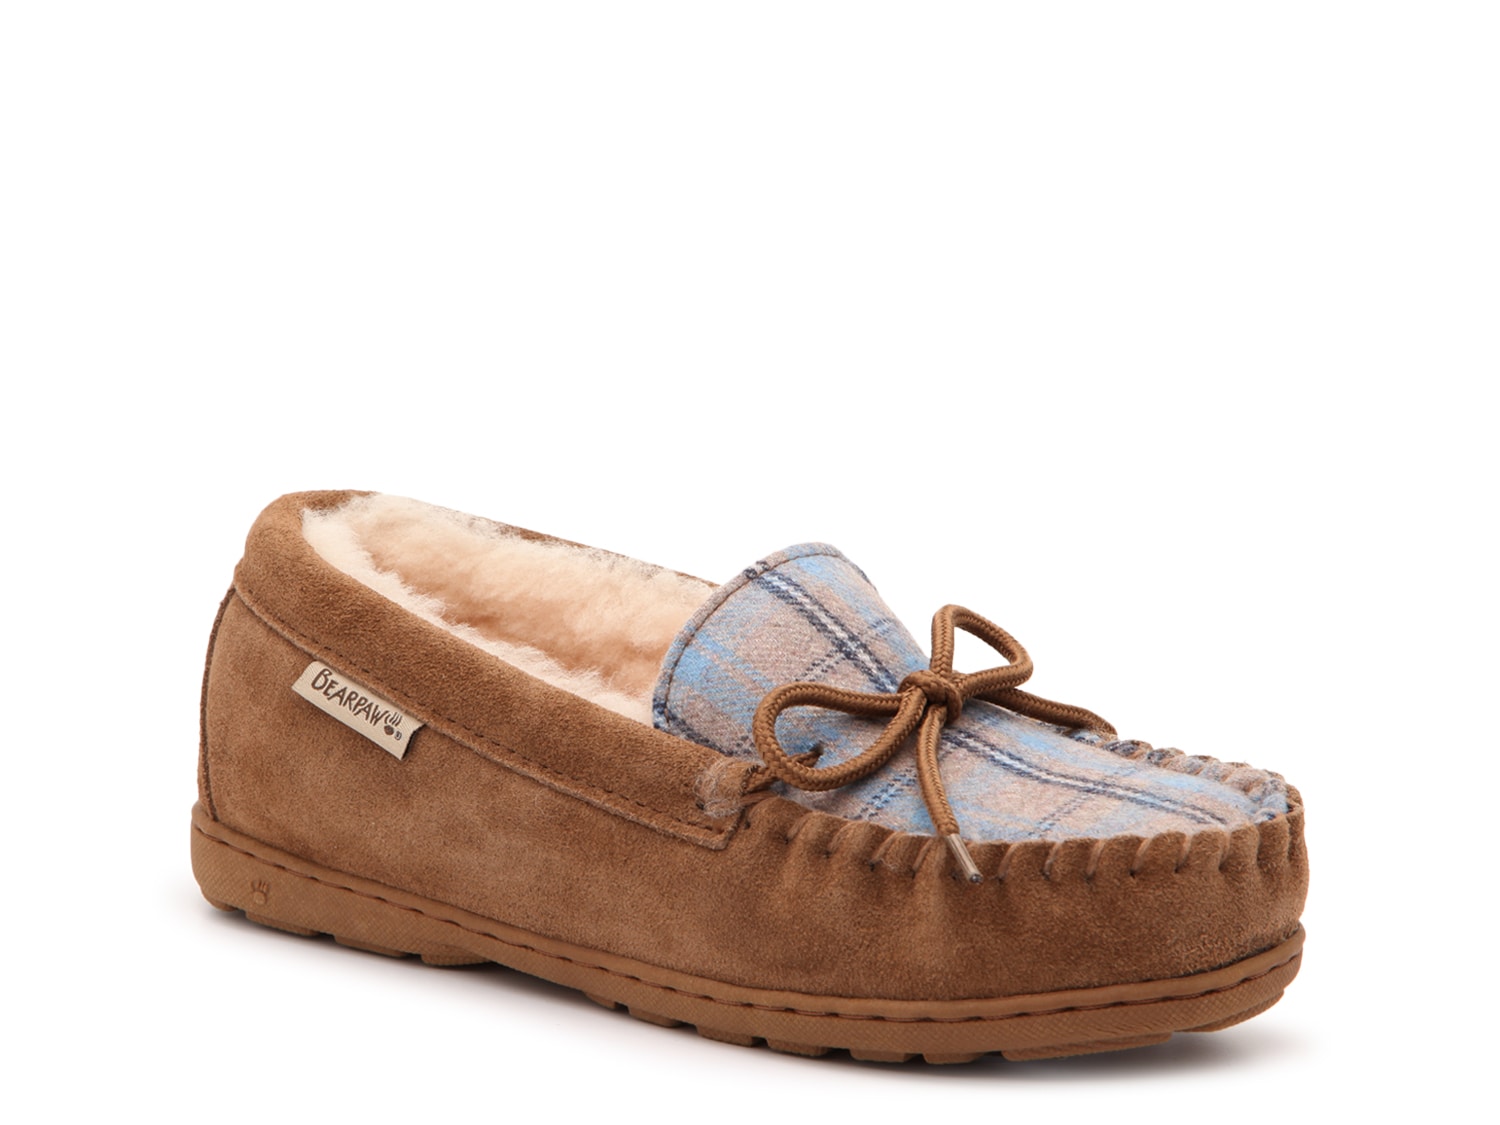 bearpaw women's mindy moccasin slipper